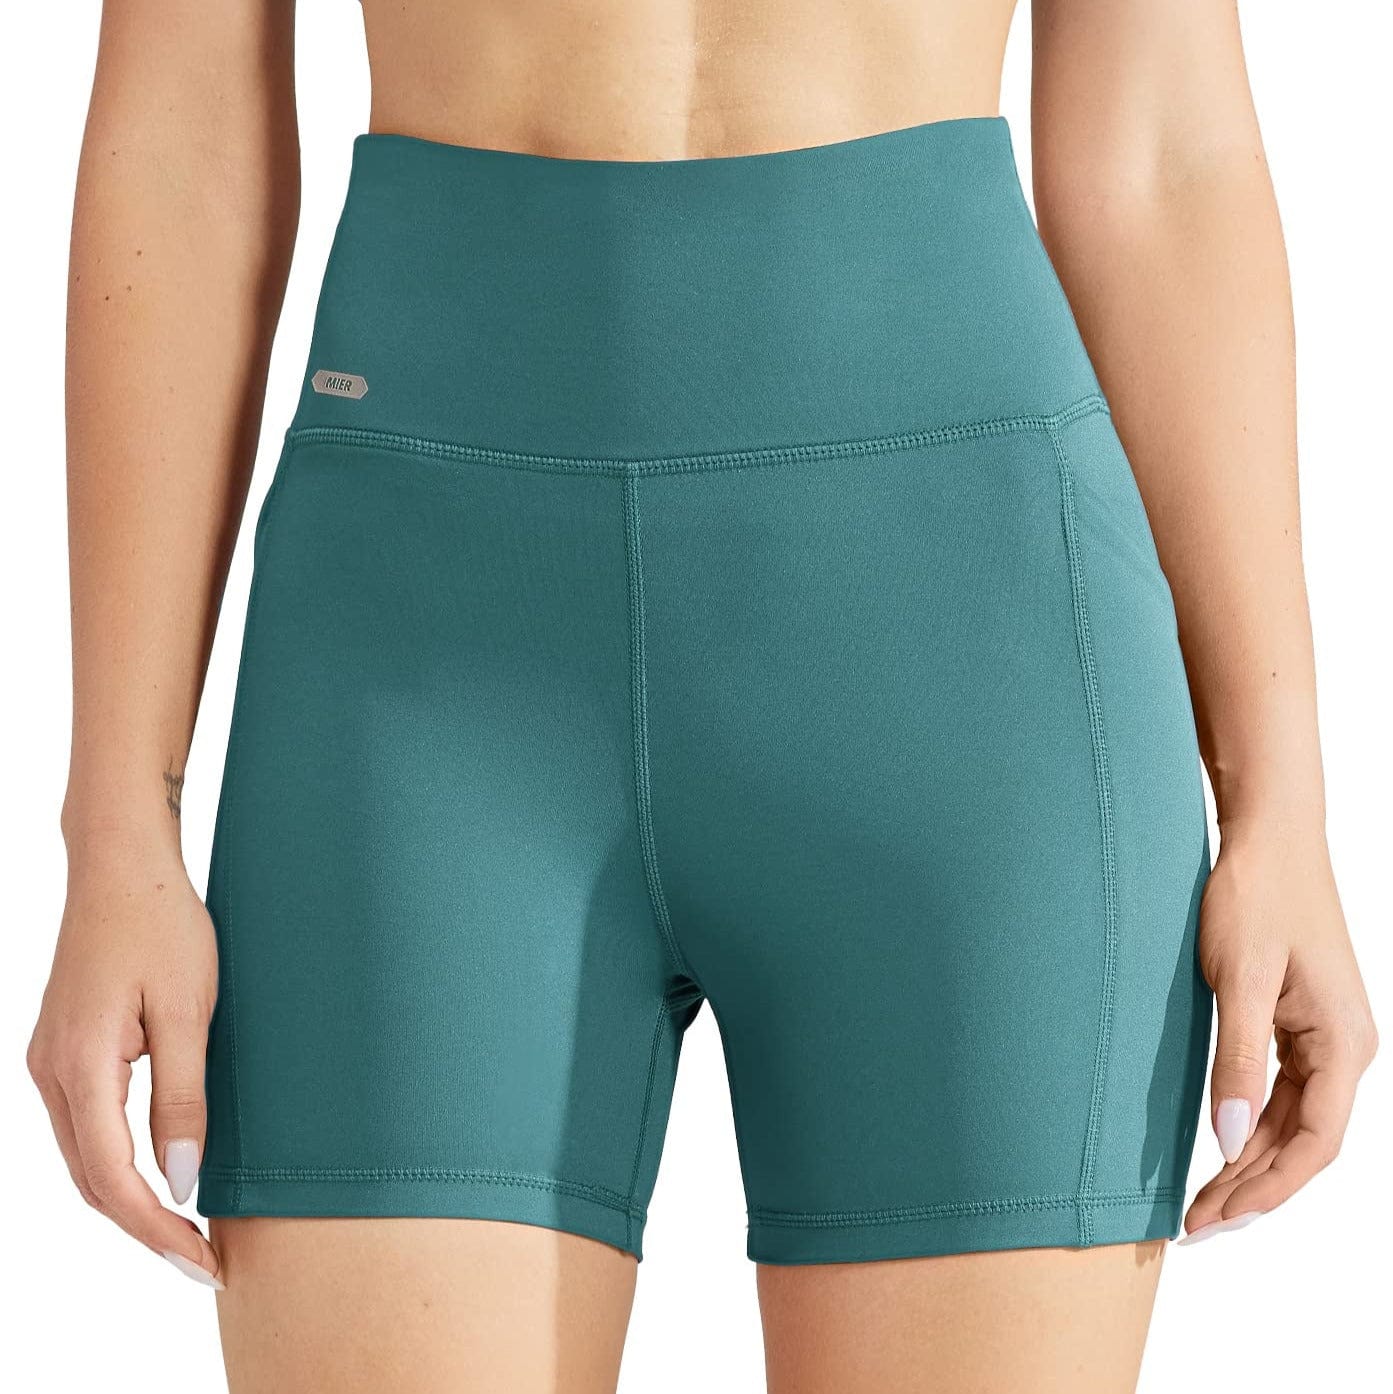 Shorts Yoga Femme - Shorts De Yoga Taille Haute Pour Femmes Shorts